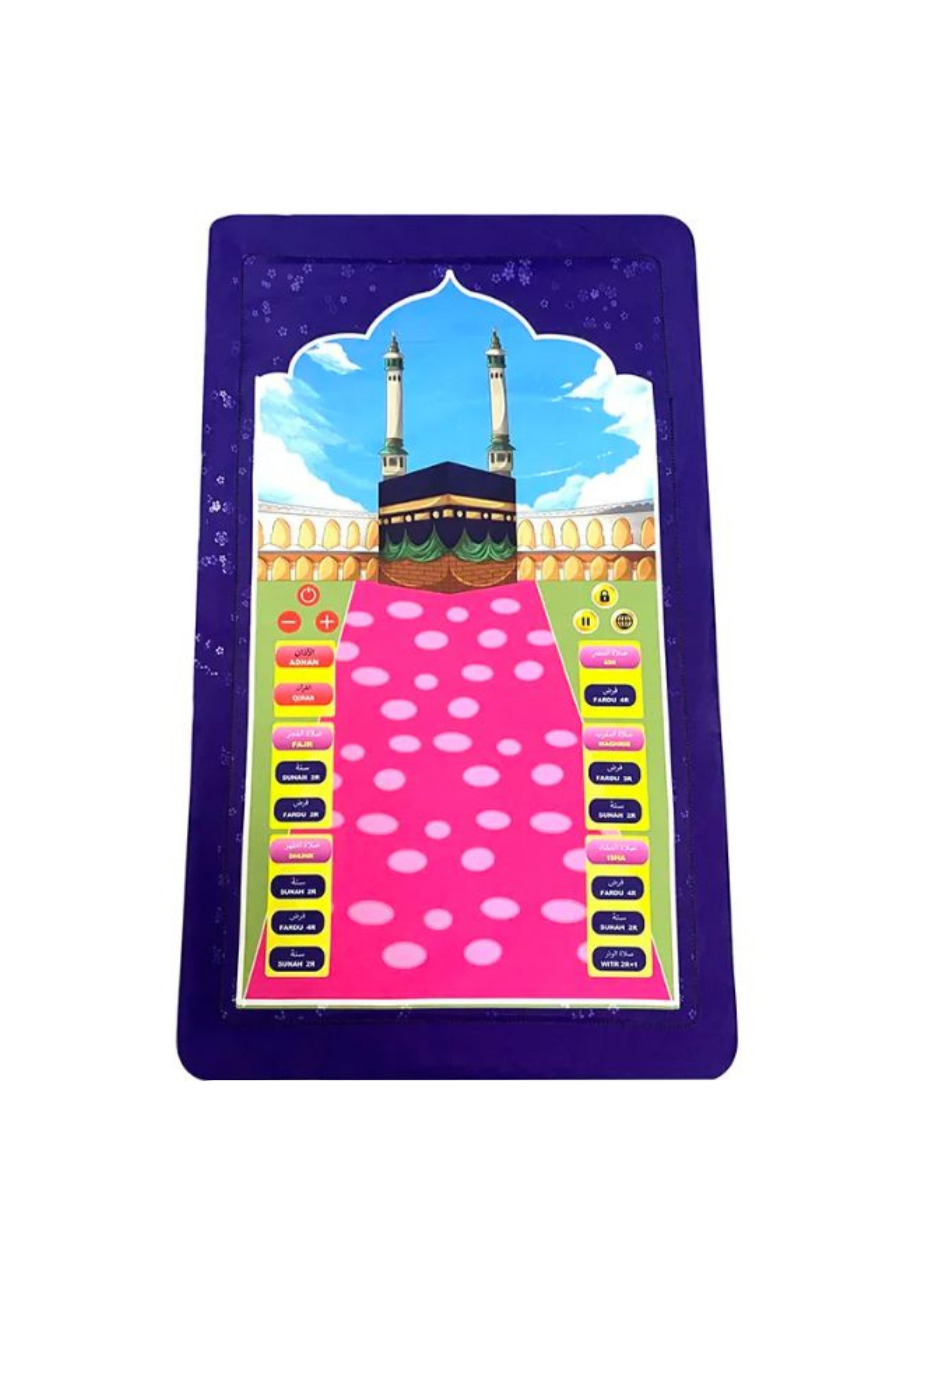 Couverture de prière électronique Interactive Eid Mubarak, tapis